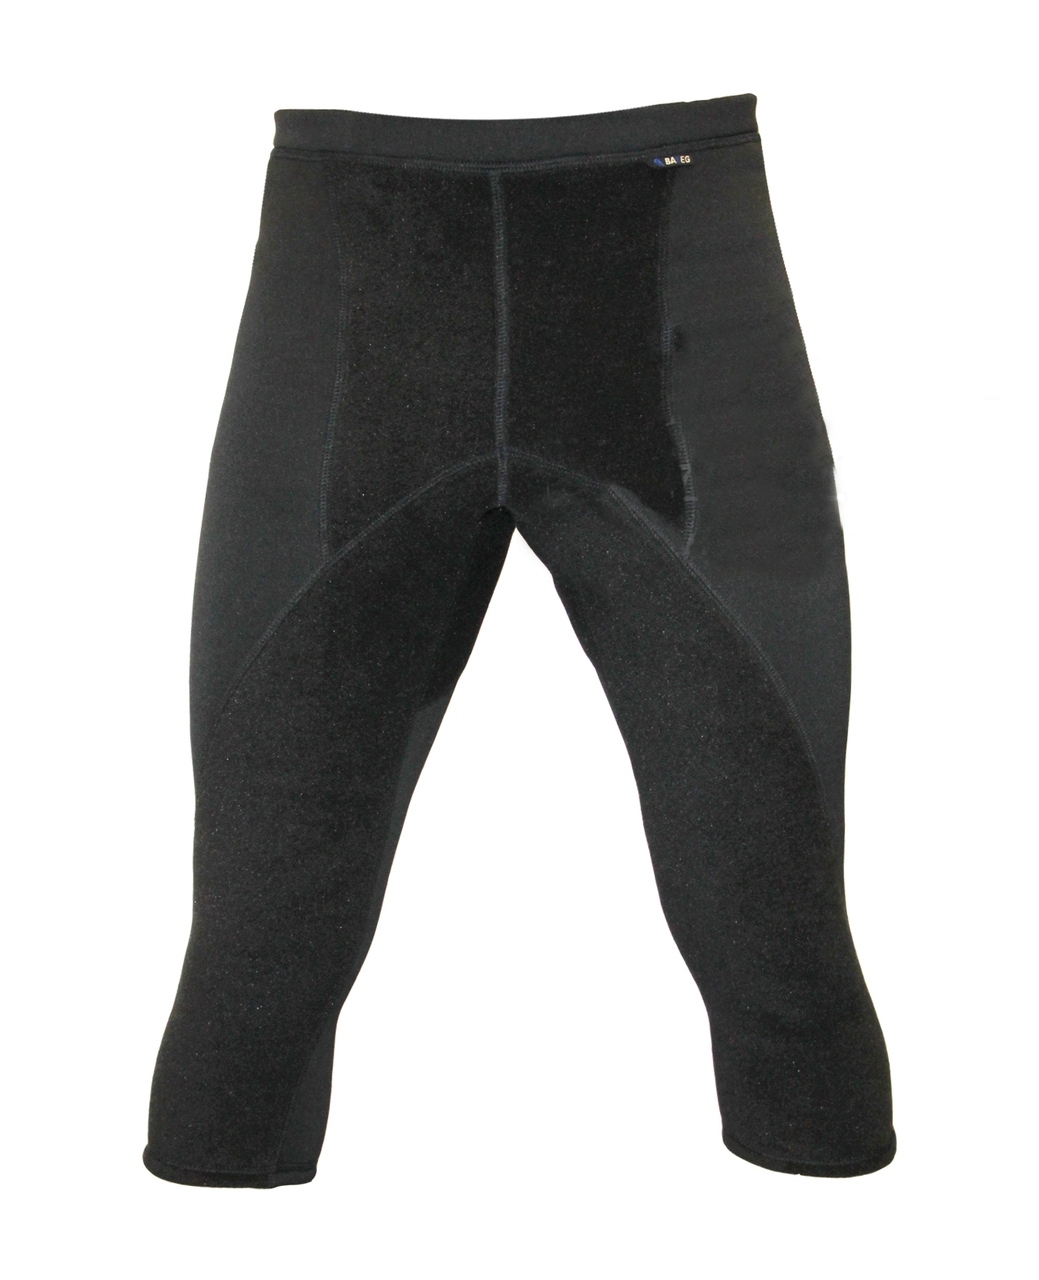 Термобелье Polartec (бриджи) из ткани power stretch - купить брюки Полартек  в интернет-магазине R159